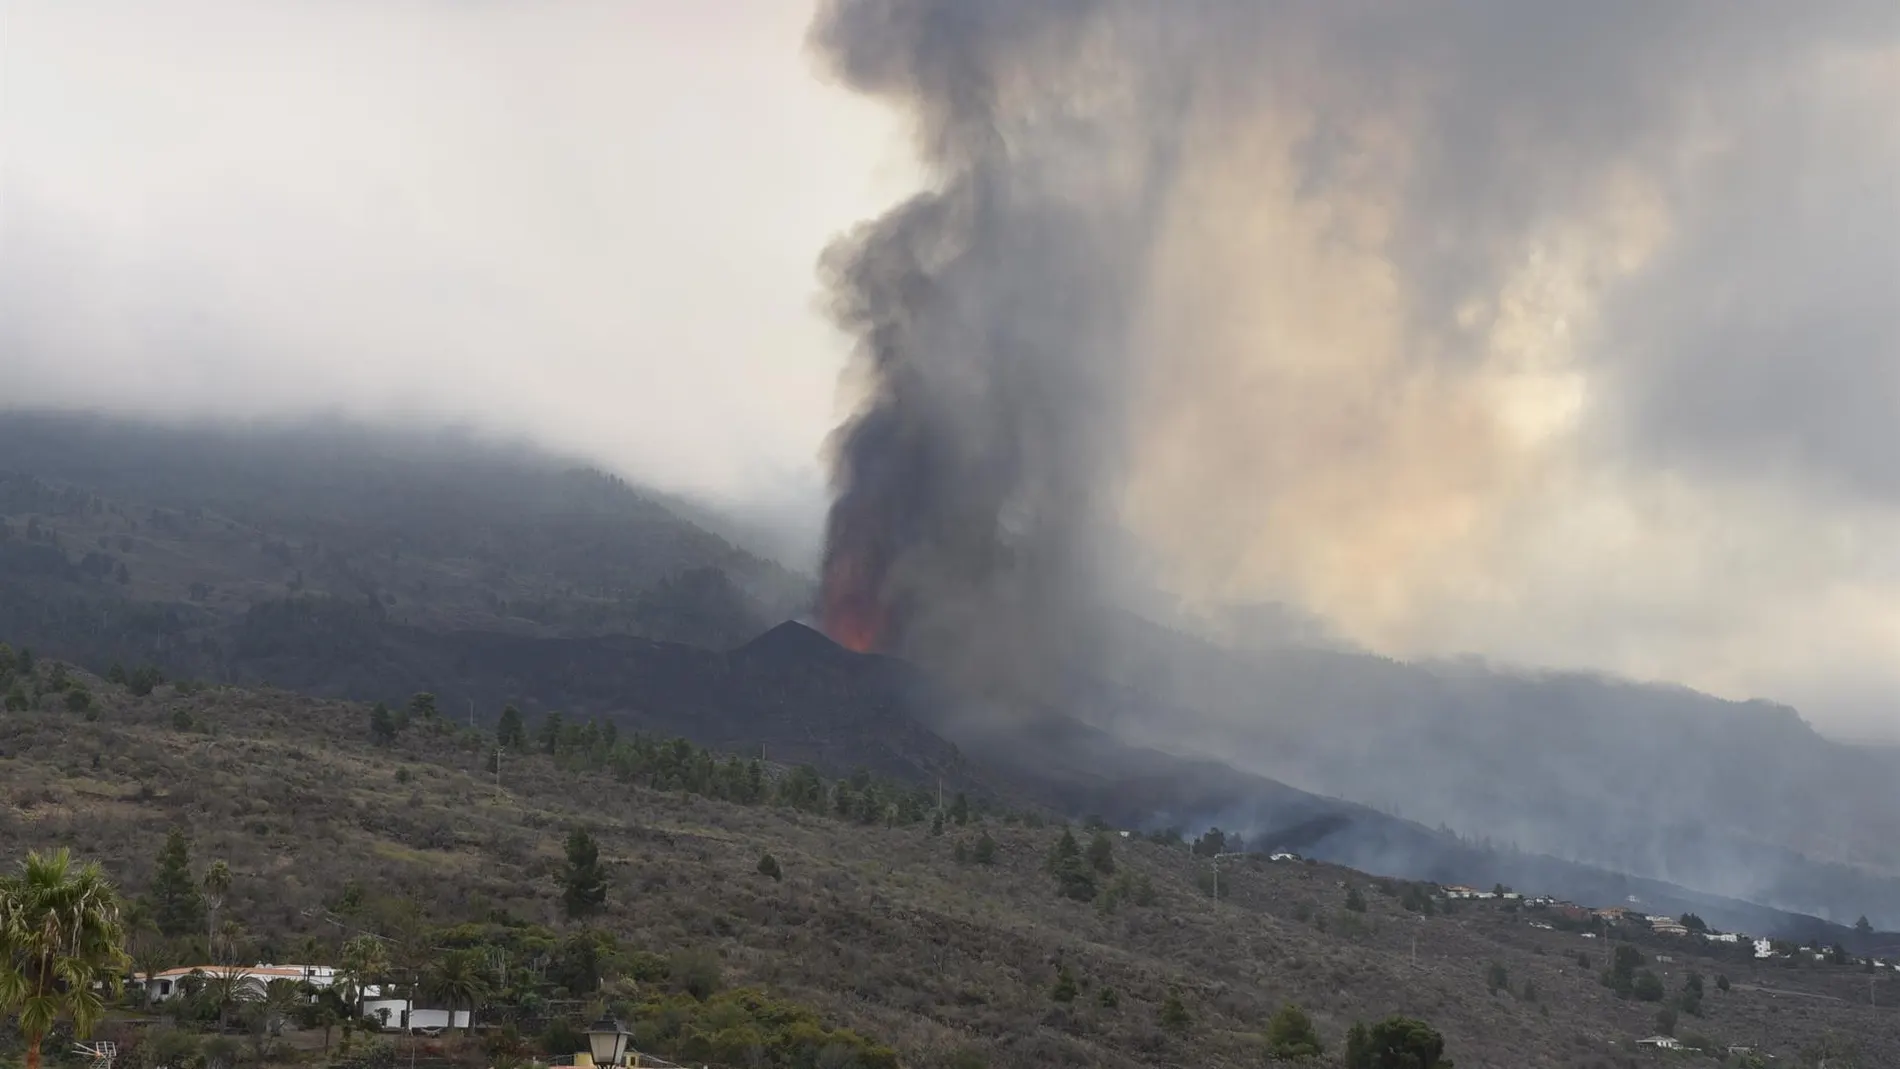  La lava mana del nuevo volcán que comenzó a erupcionar este domingo en La Palma